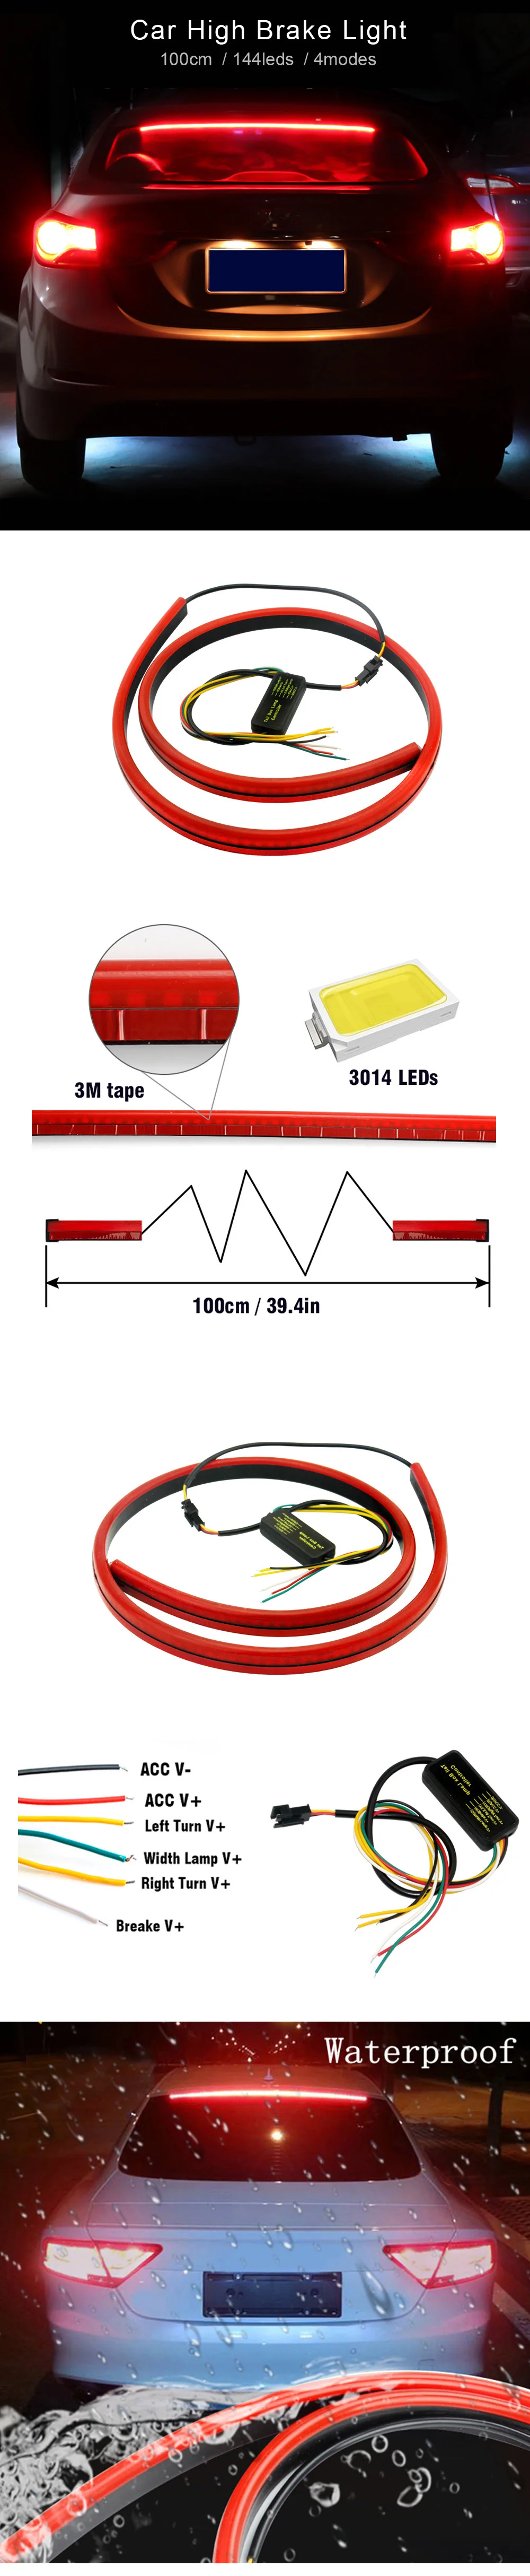 12V 100 см кабулк красный цвет, Unverisal автомобиля стоп светильник гибкий светодиодный высокое дополнительный упор светильник с Поворотные сигналы, функции